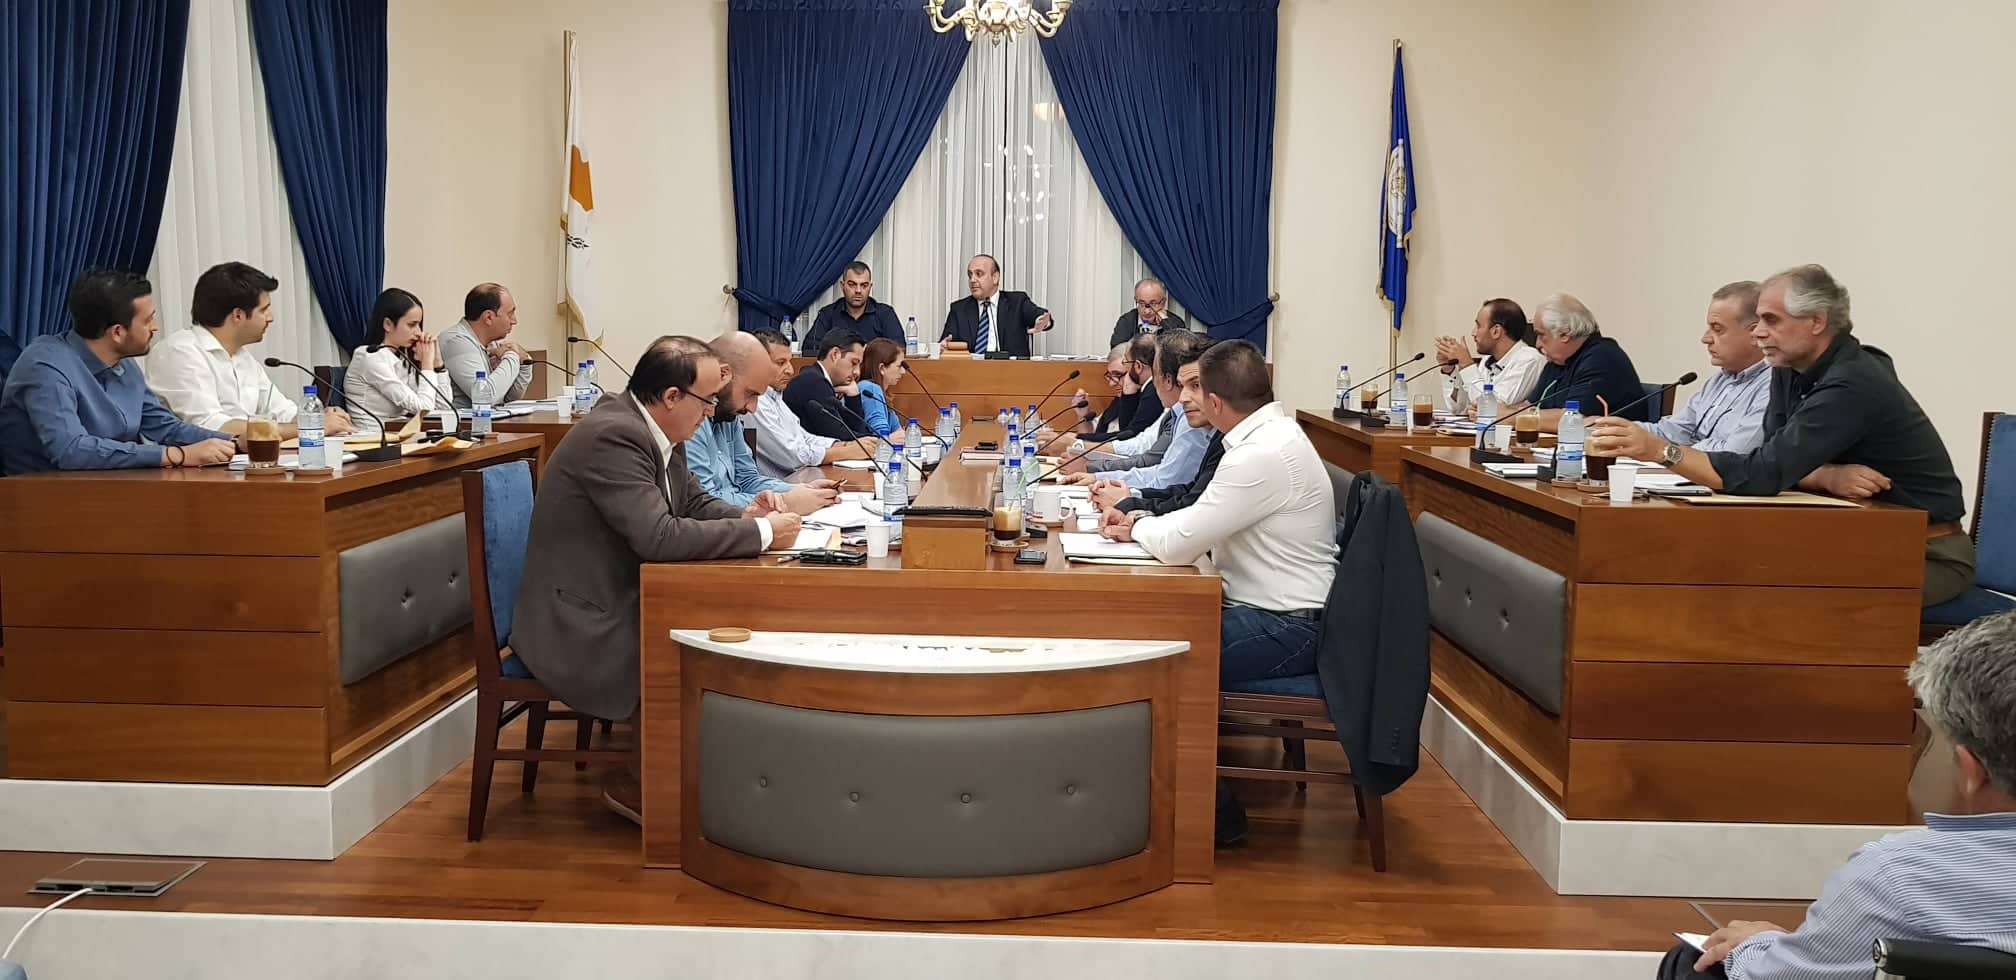 Δήμος Πάφου: Επί τάπητος ξανά ο προϋπολογισμός - Έντονο παρασκήνιο